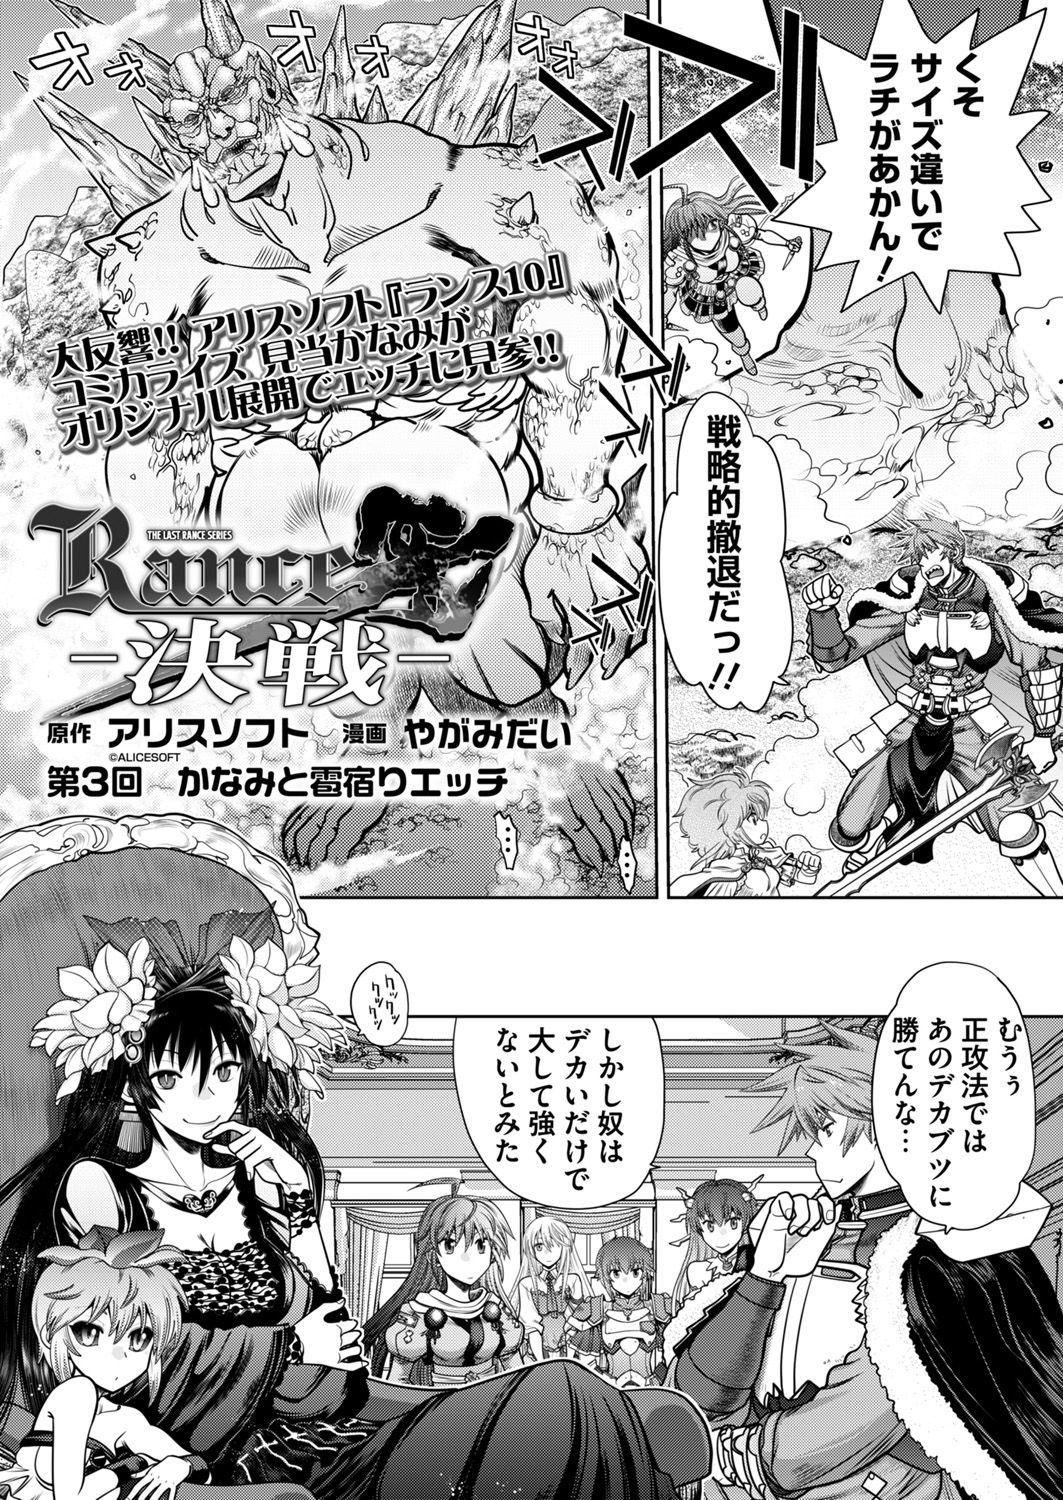 Femdom [Yagami Dai] Rance 10 -Kessen- Ch 03-05 - Rance Bondagesex - Page 1